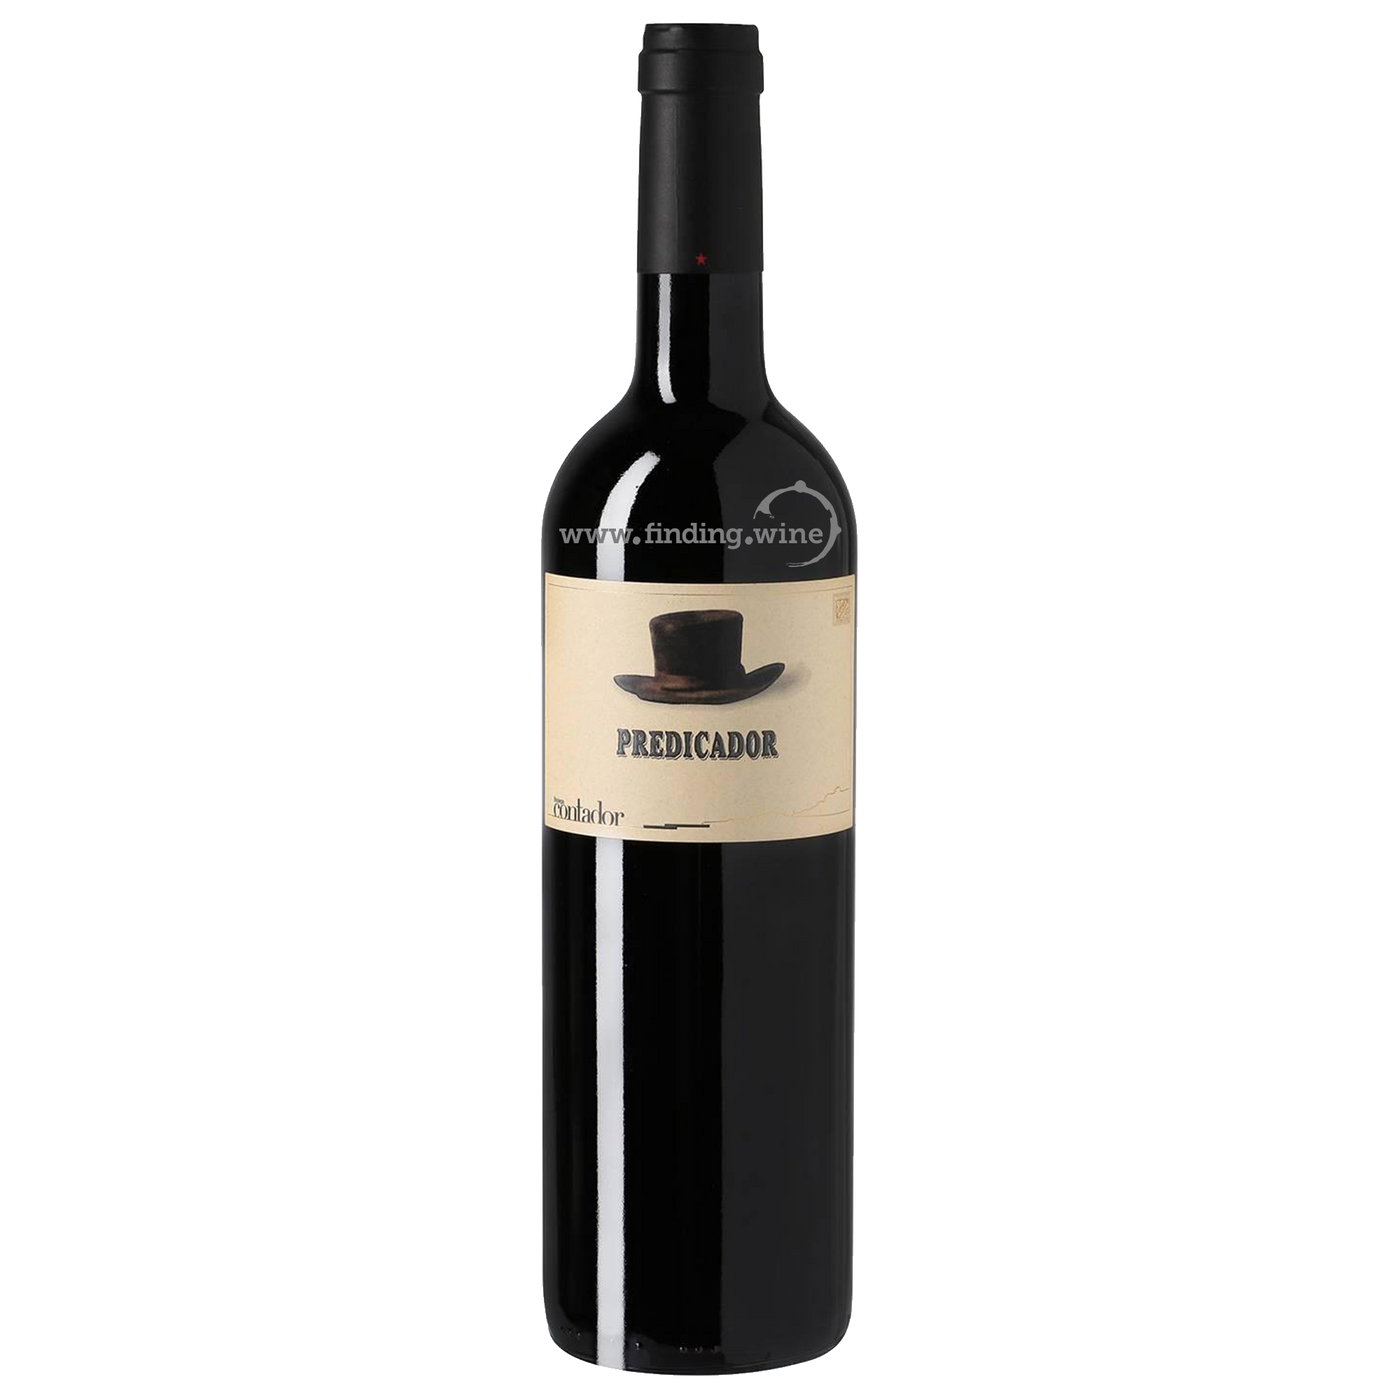 Noticias Fondos Marchitar Bodega Contador - 2019 - Predicador Tinto - 750 ml. - Rioja – finding.wine